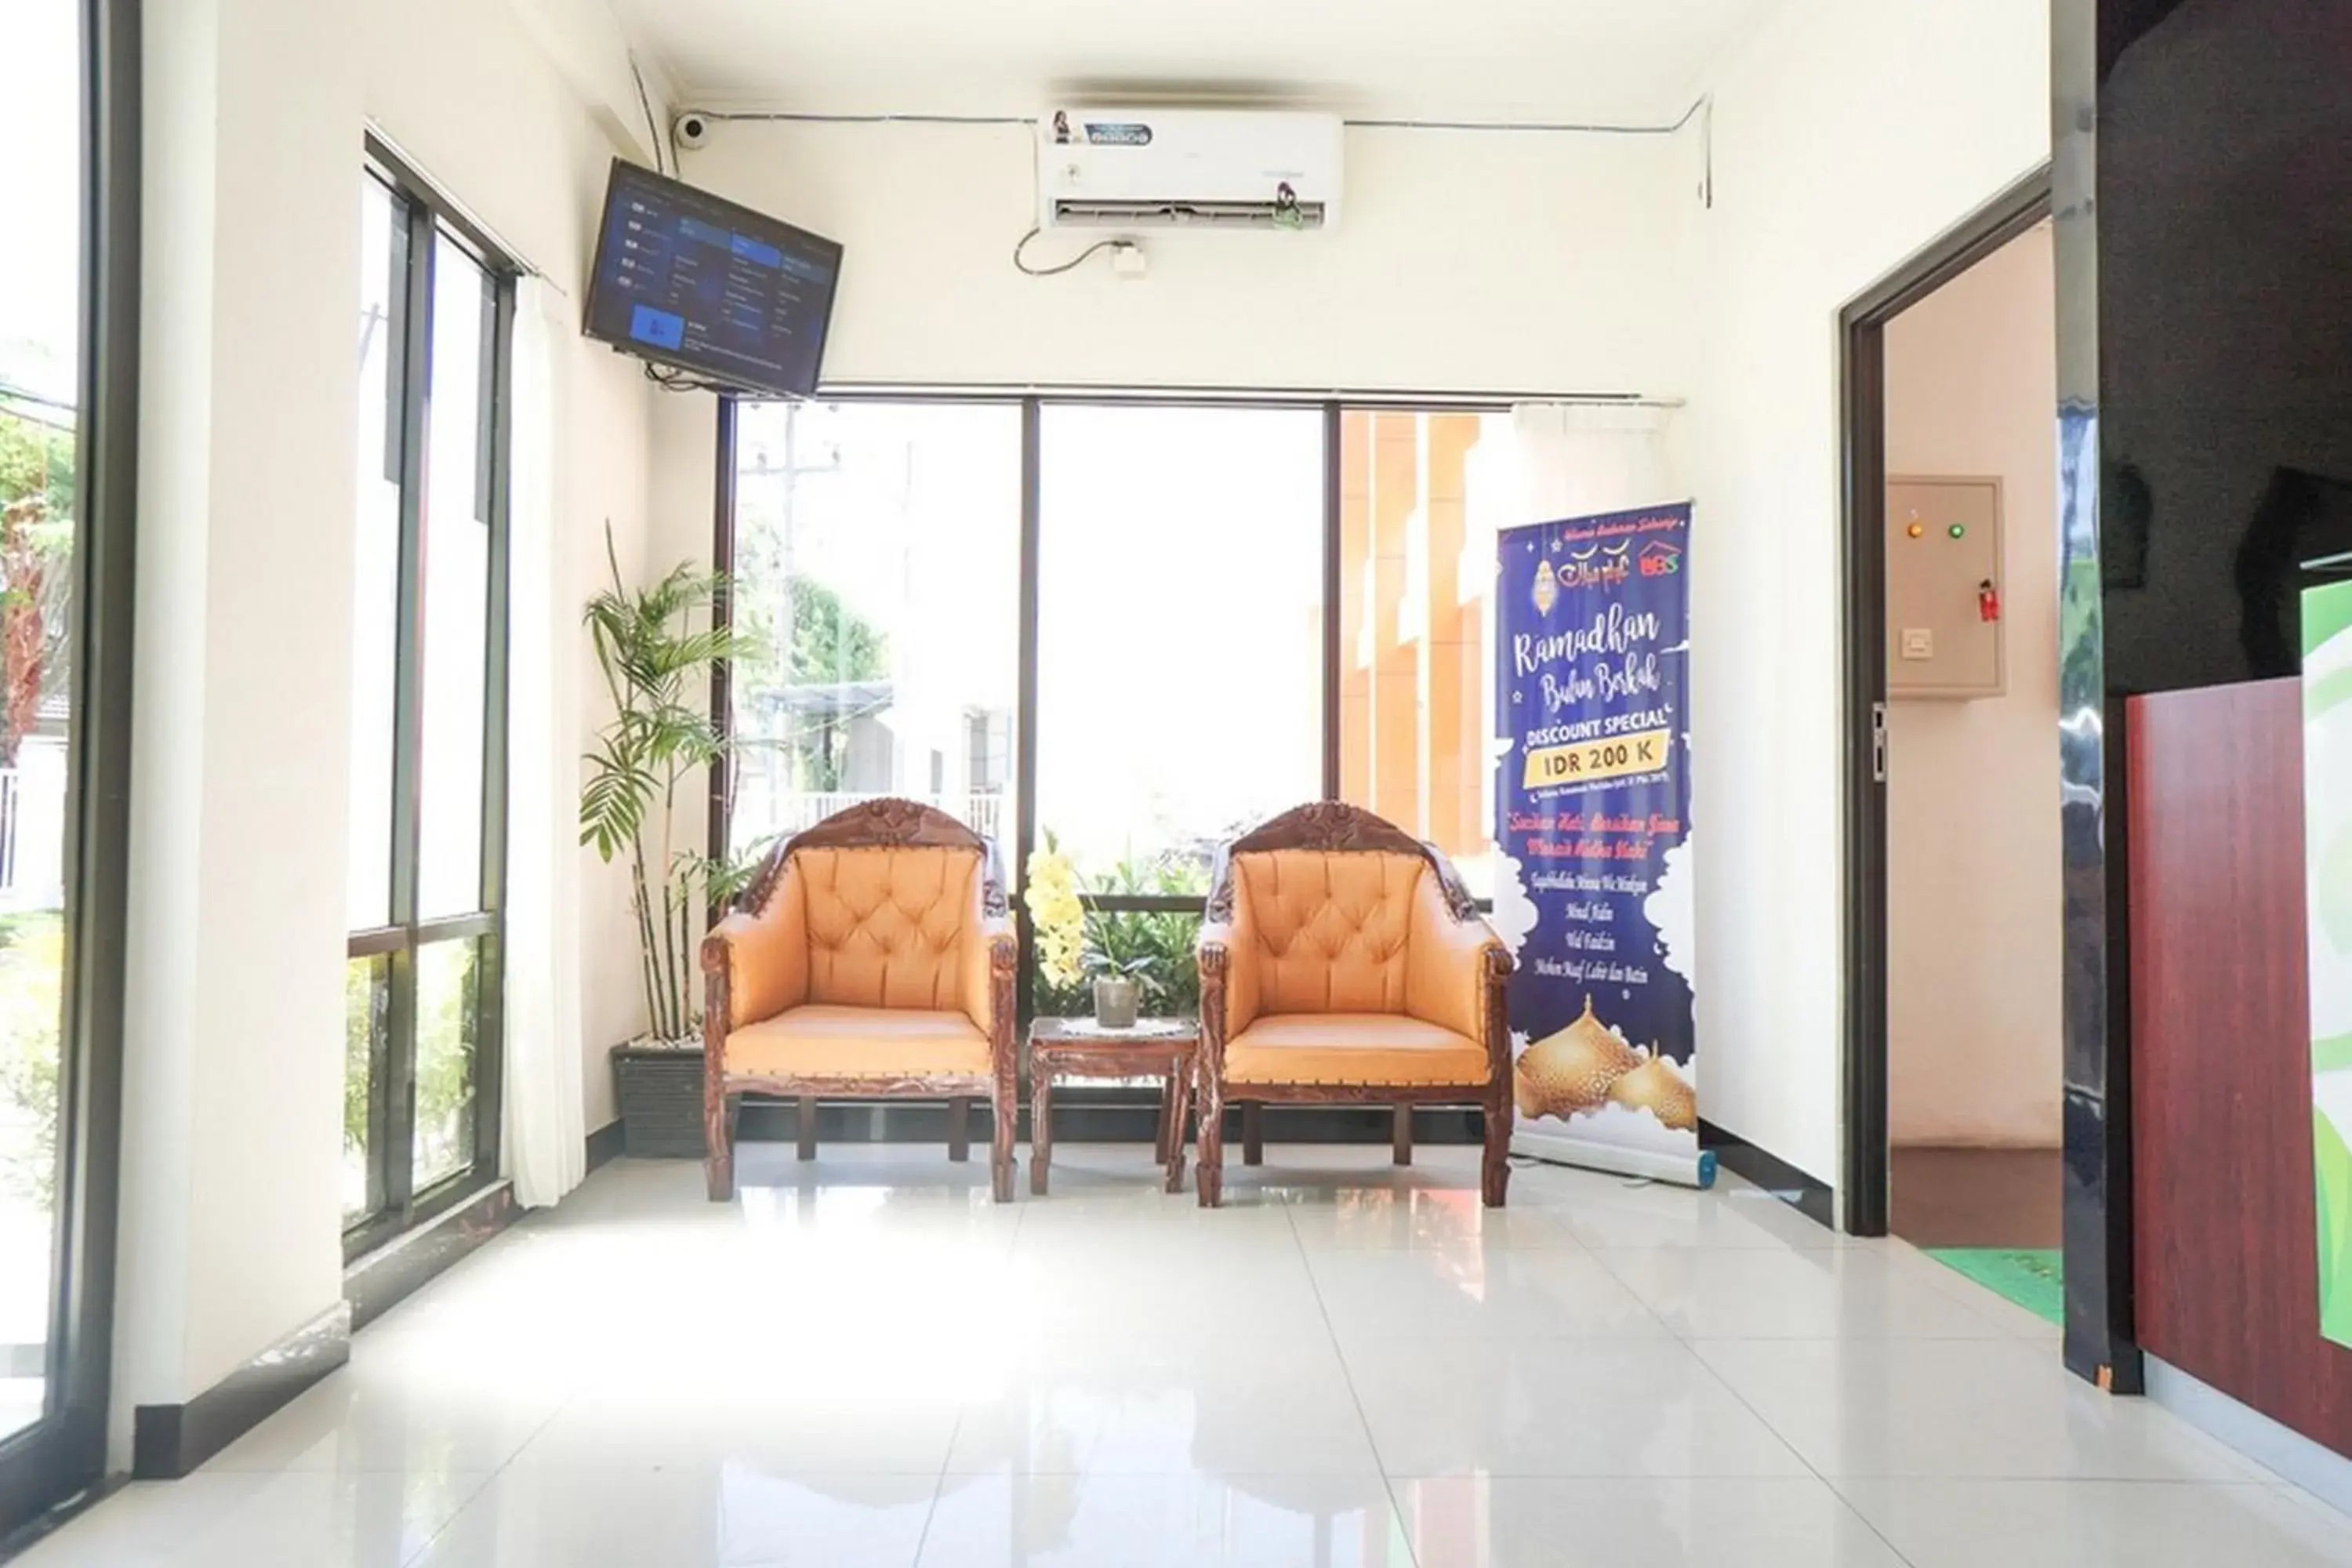 Lobby or reception, Lobby/Reception in RedDoorz Syariah @ Buduran Sidoarjo